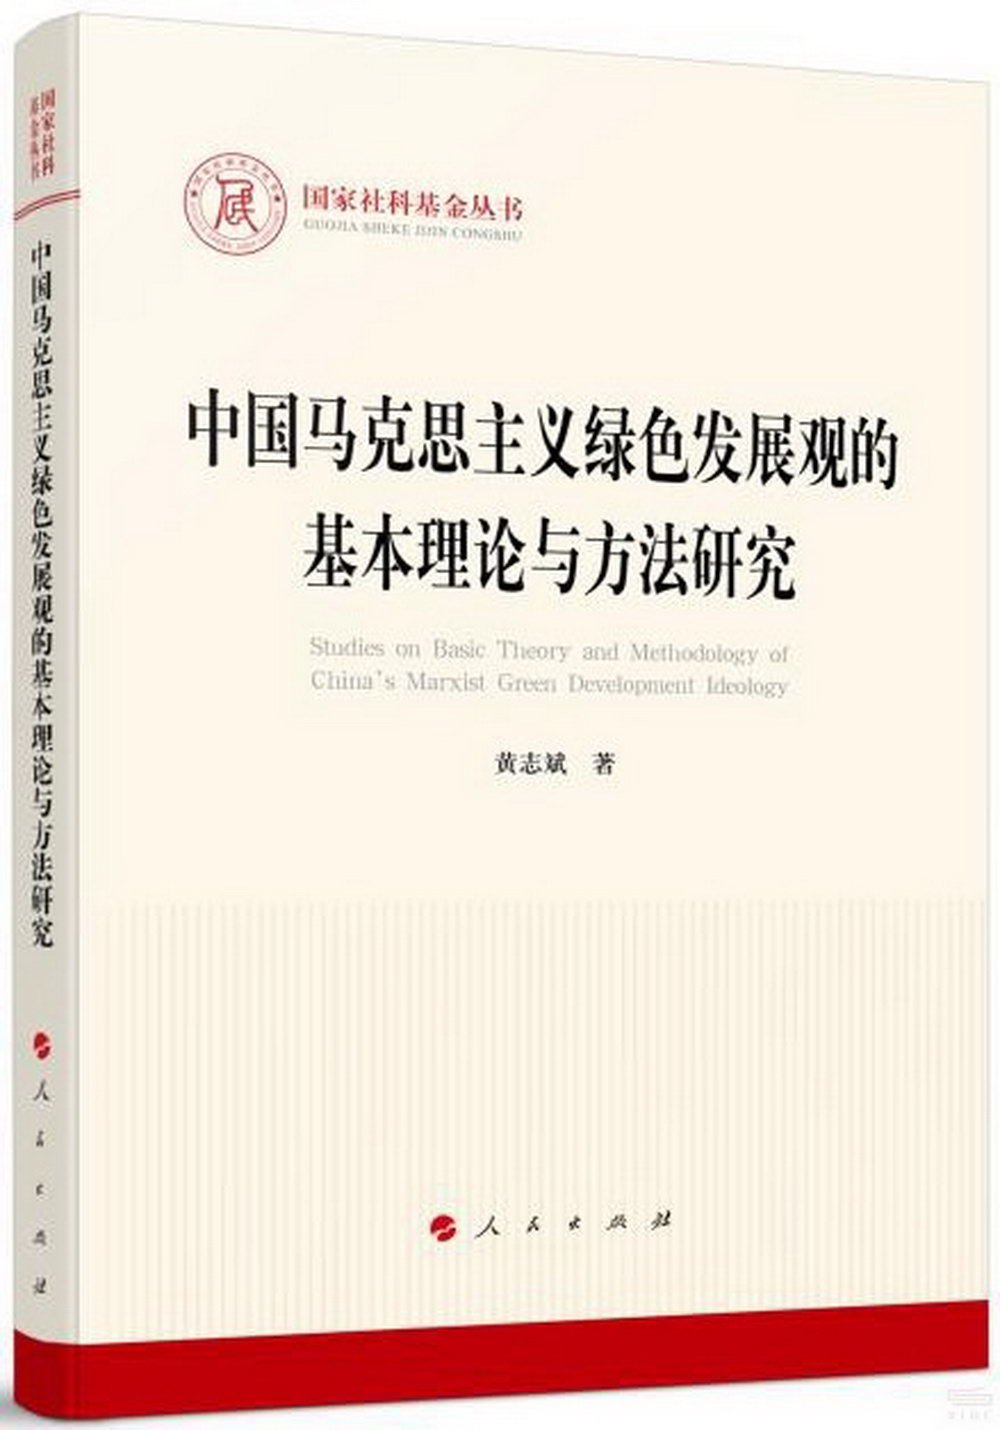 中國馬克思主義綠色發展觀的基本理論與方法研究